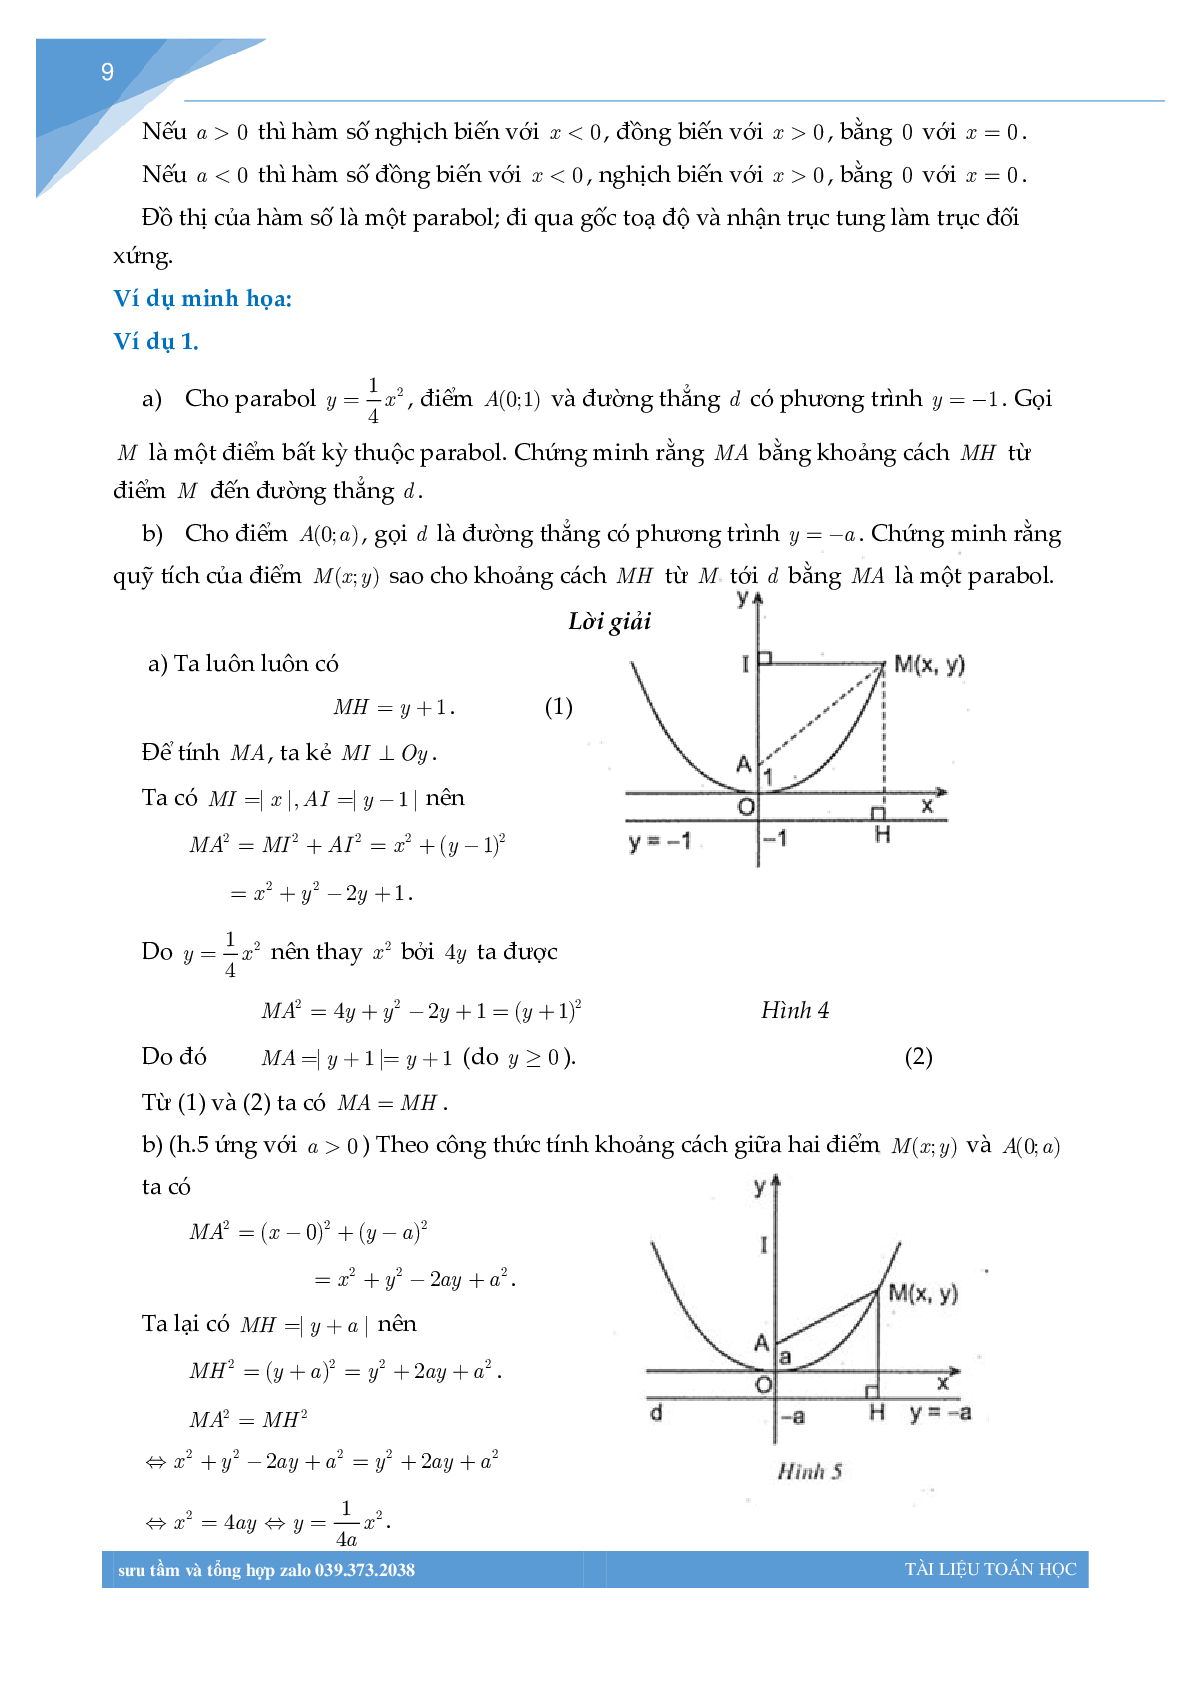 Chuyên đề hàm số bồi dưỡng học sinh giỏi toán THCS (trang 8)